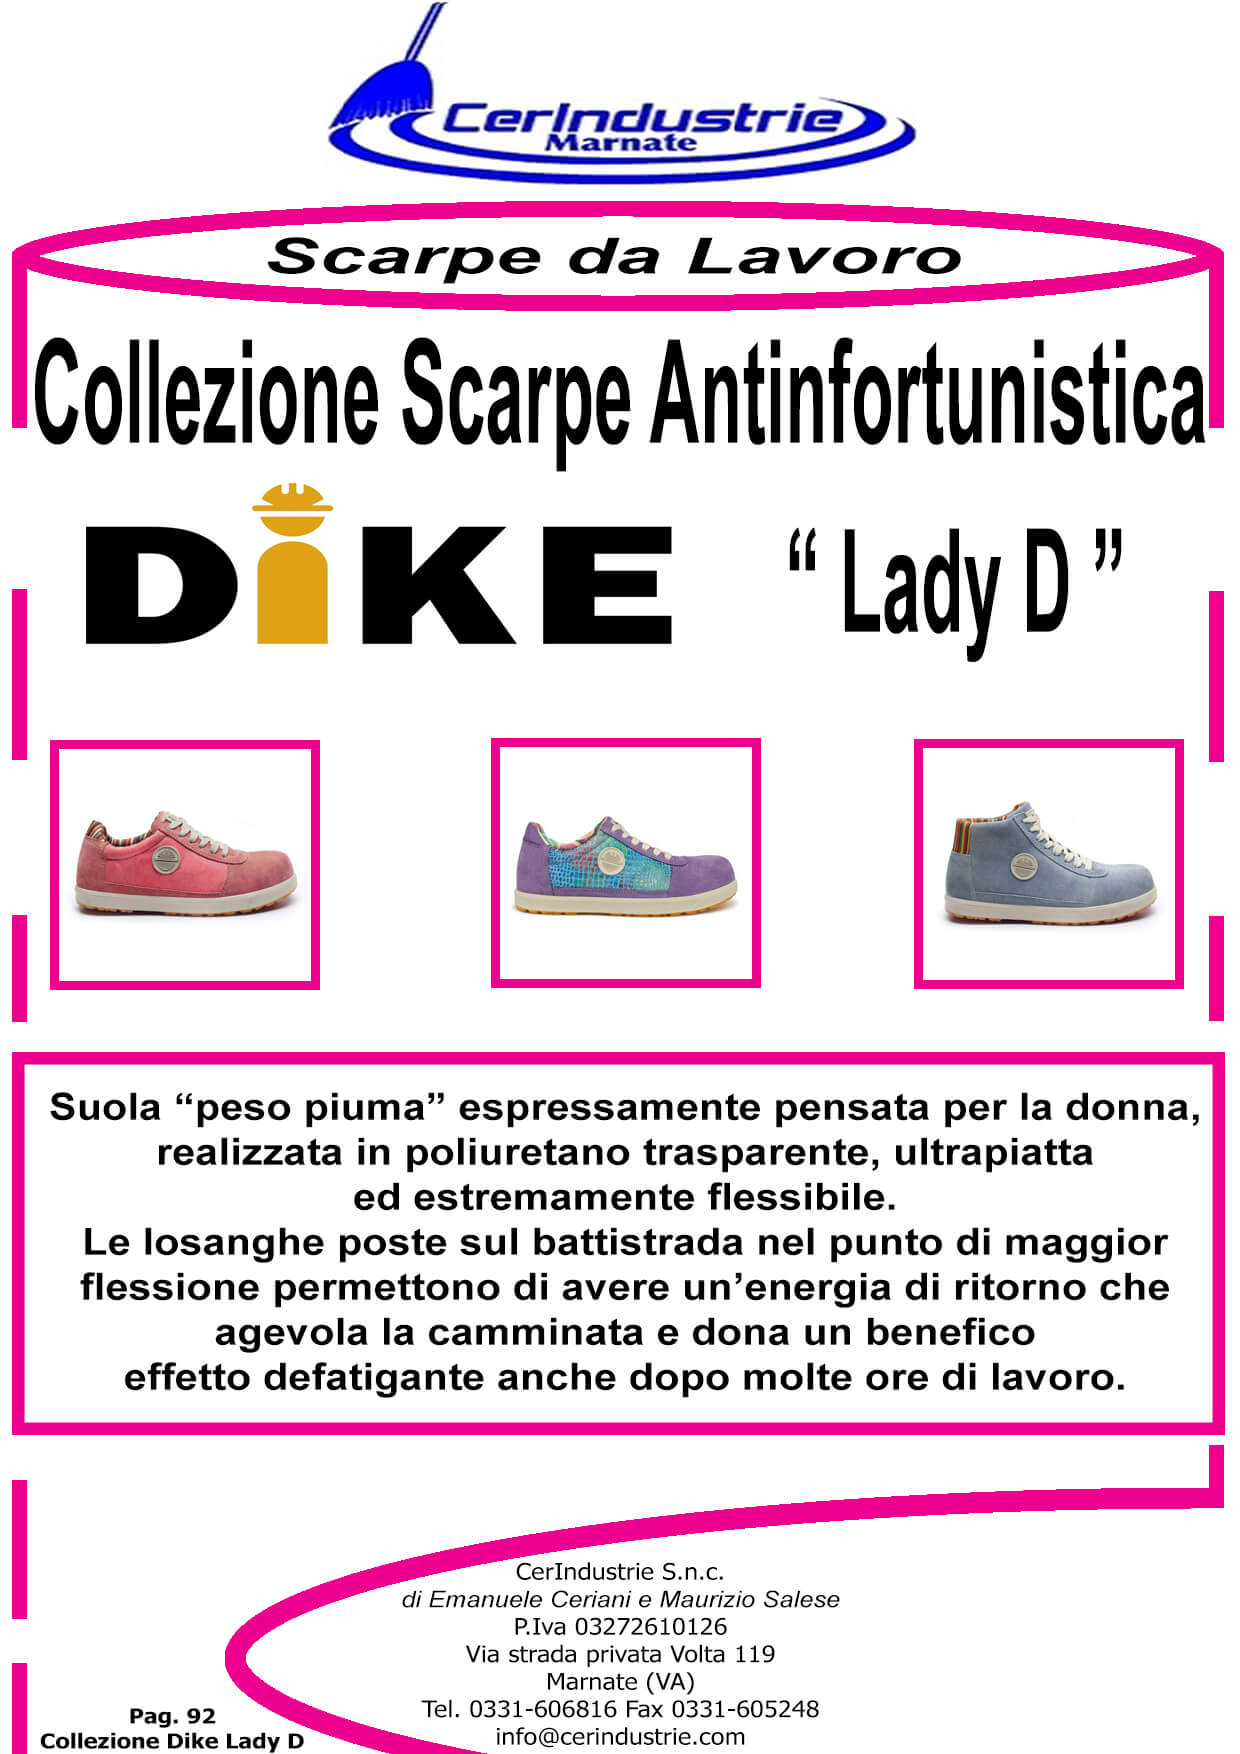 Collezione Scarpe Antinfortunistica Dike Lady D